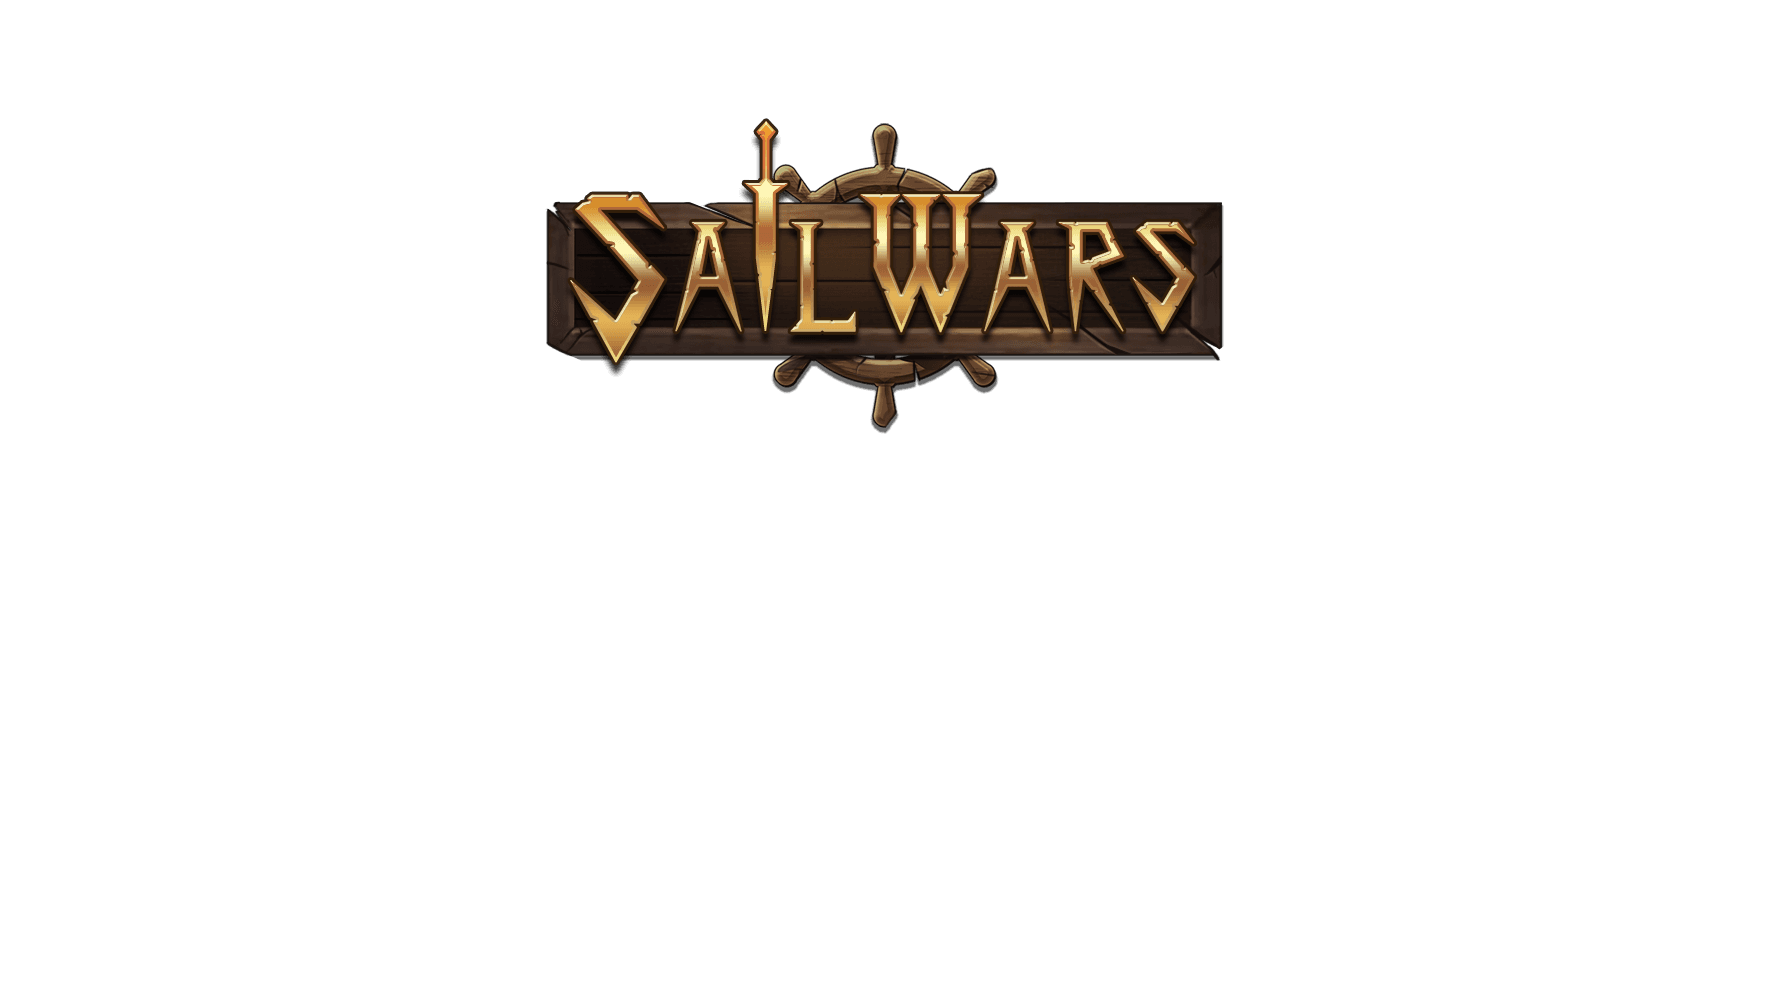 Sailwars_Logo.png